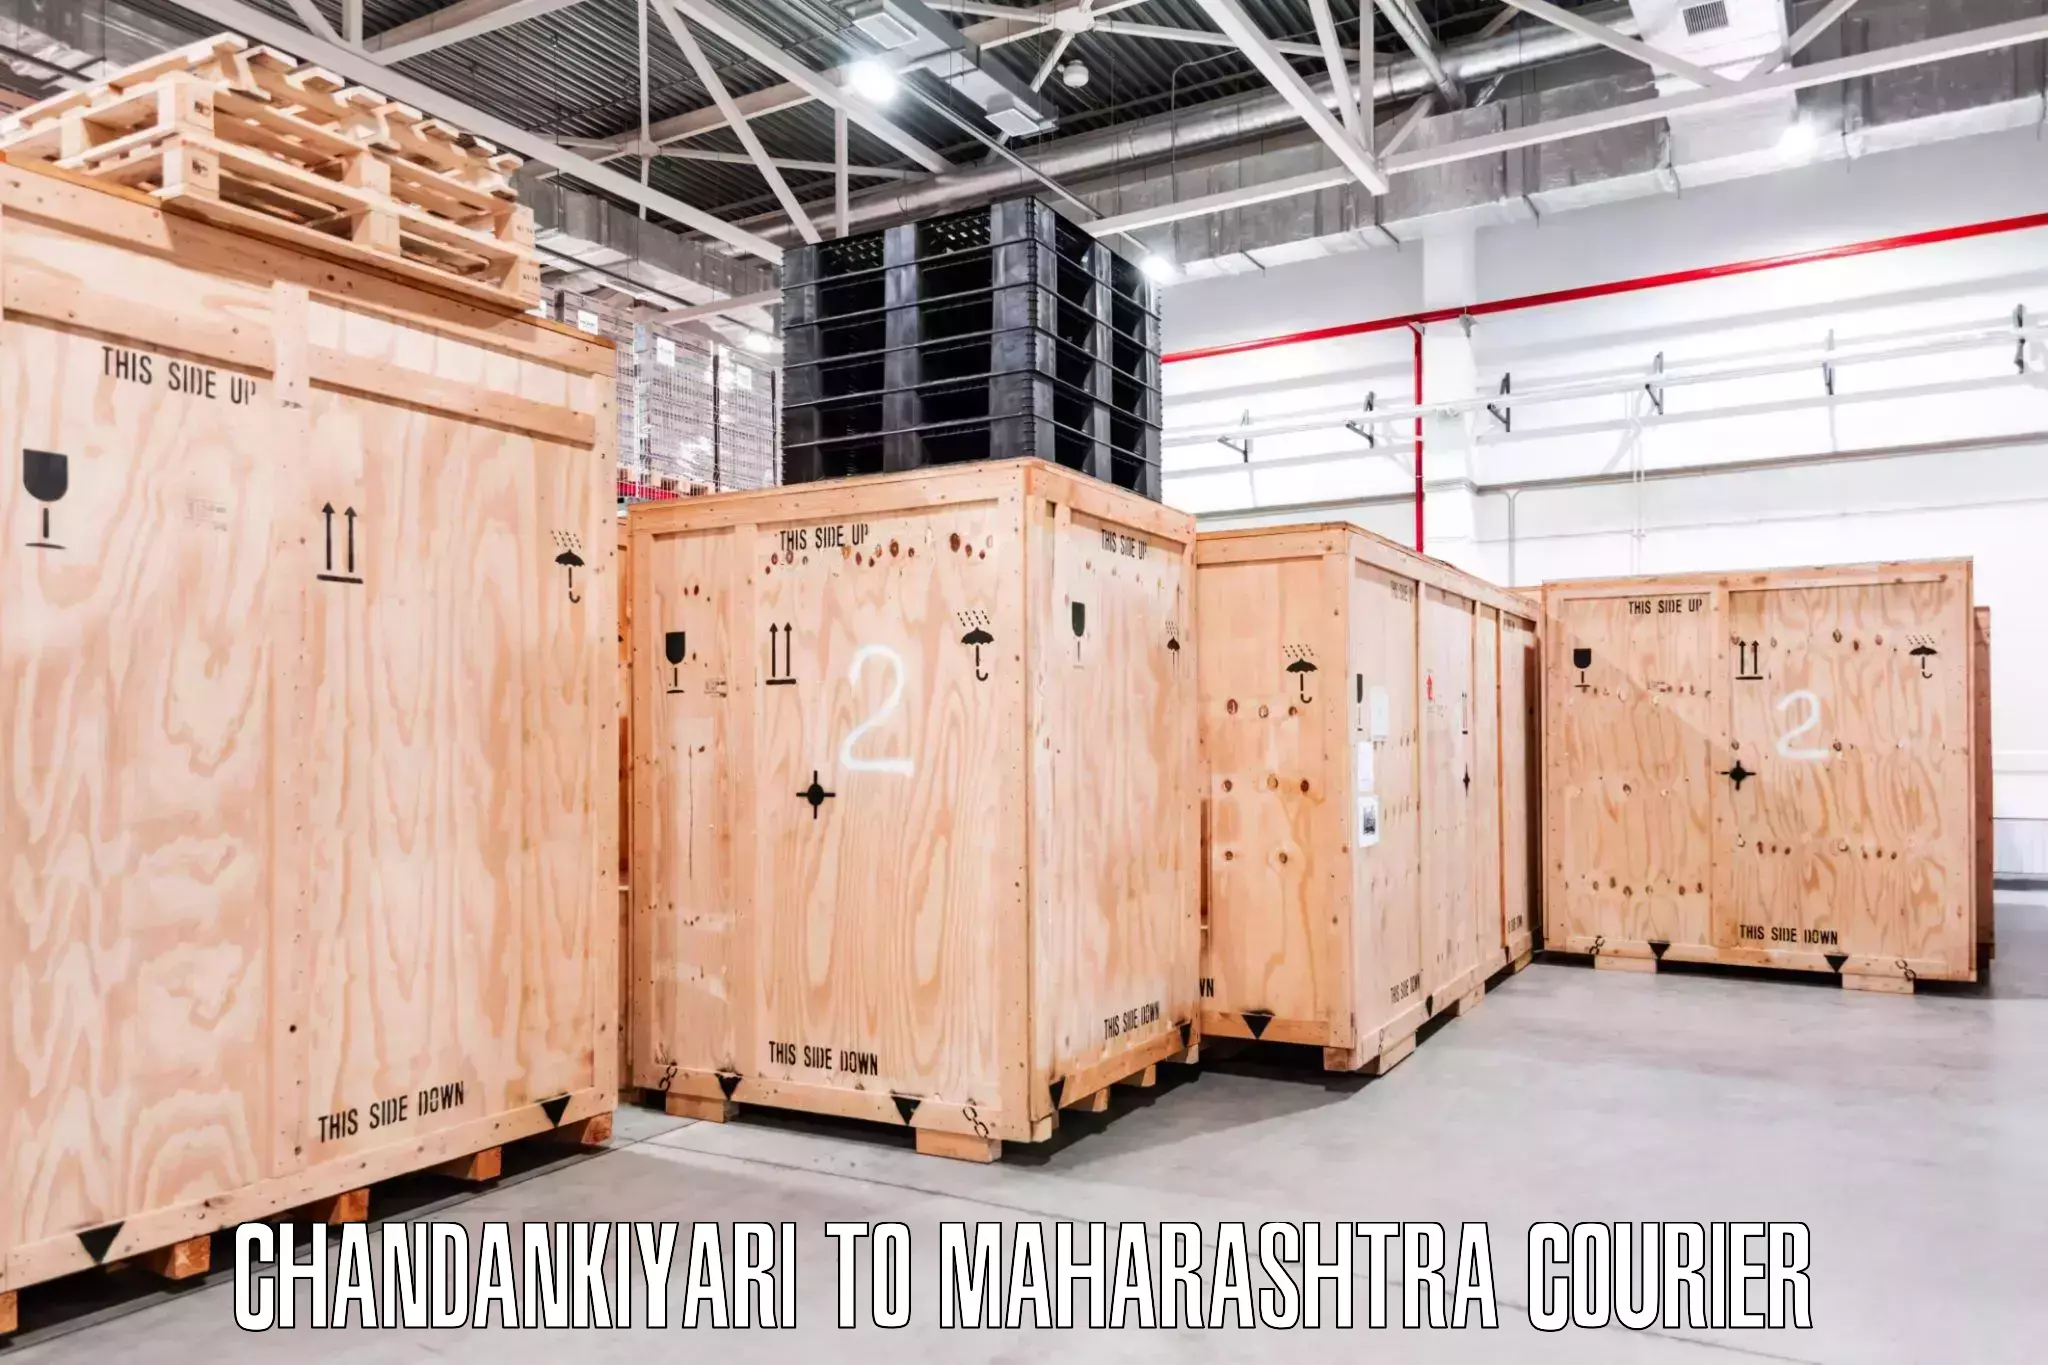 Furniture moving experts Chandankiyari to Kalbadevi